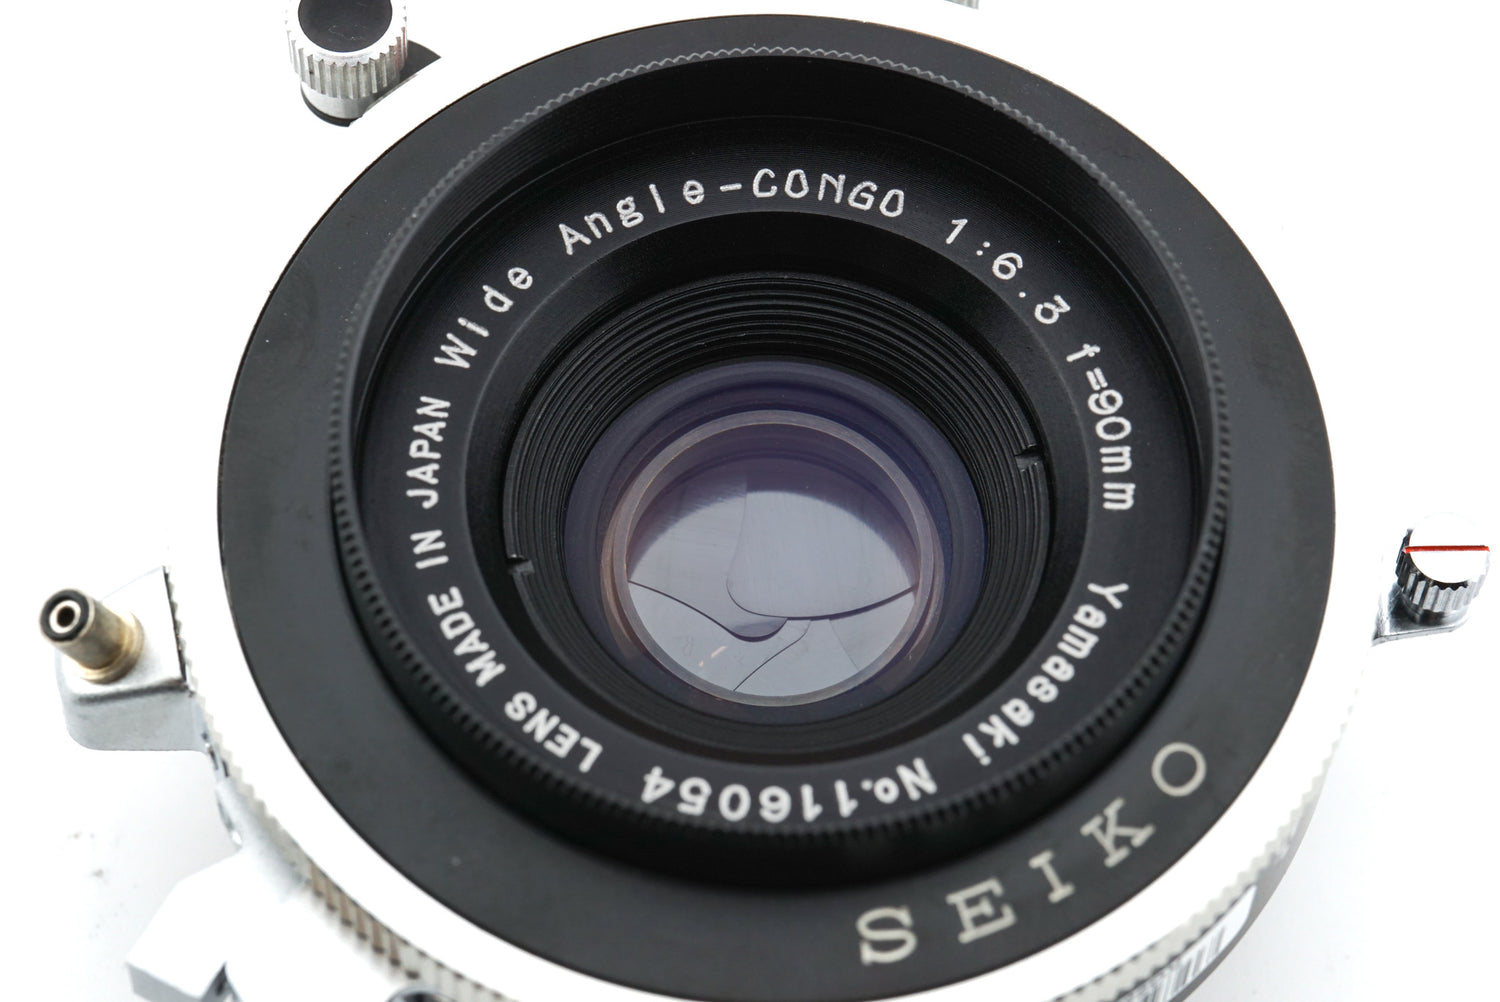 山崎光学 Yamasaki Wide Angle-CONGO 90mm f/6.3 | transparencia